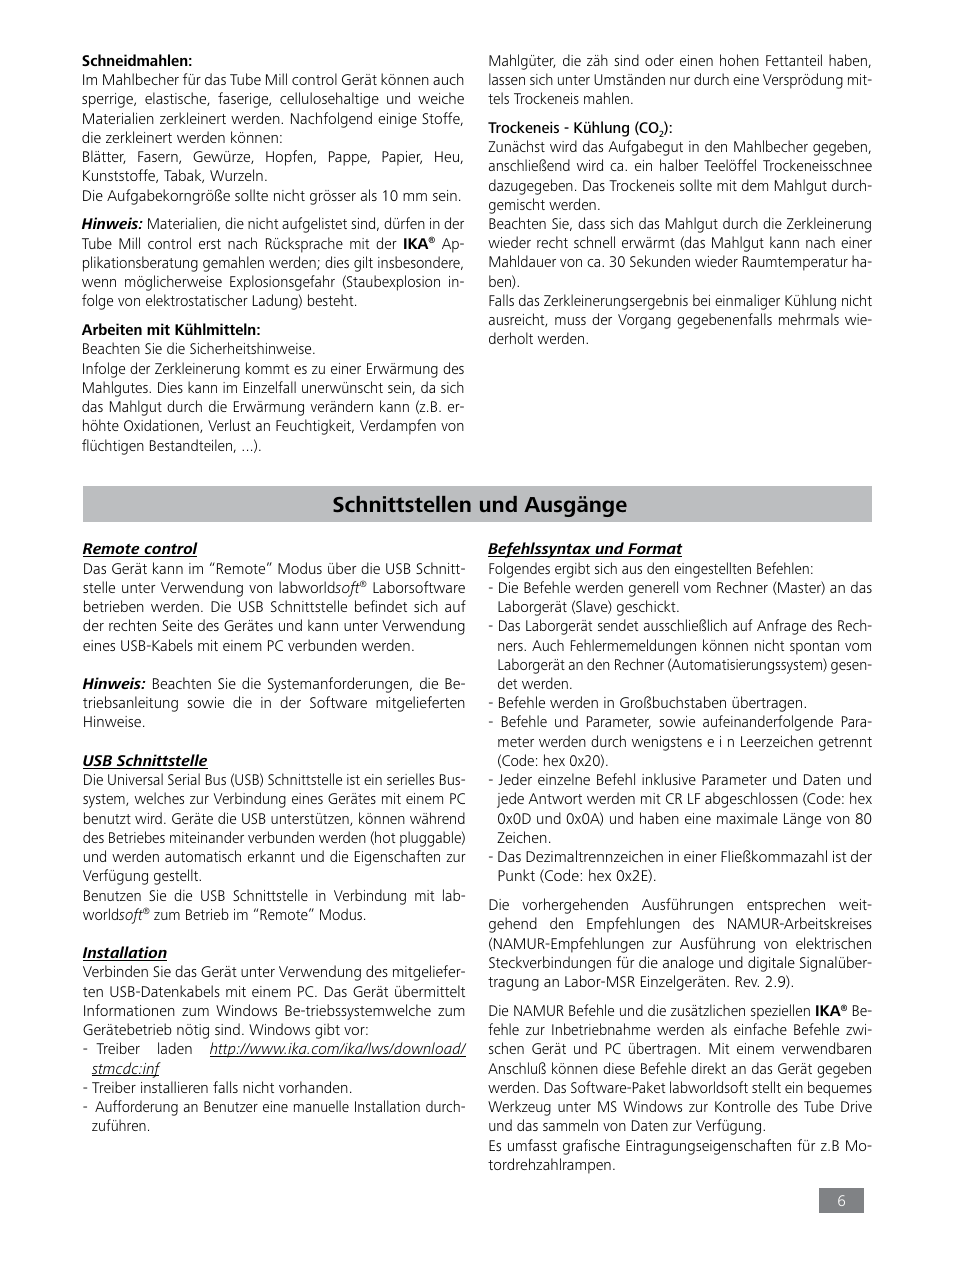 Schnittstellen und ausgänge | IKA Tube Mill control User Manual | Page 6 / 64